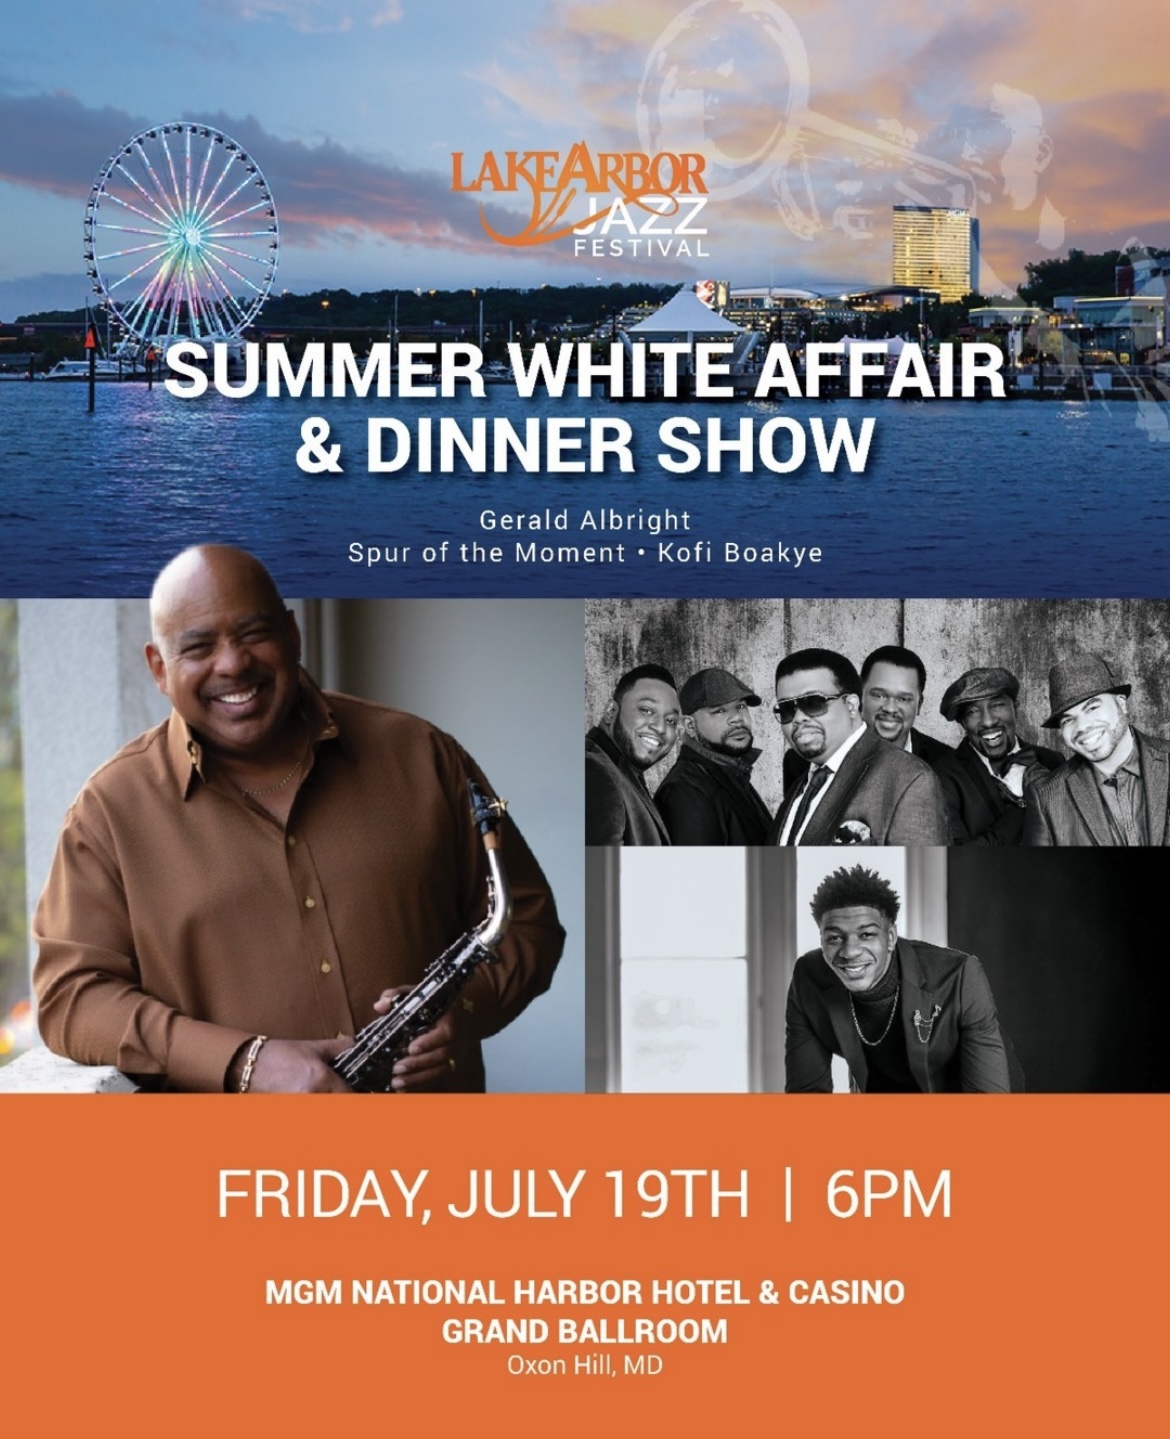 Lake Arbor Jazz Festival Summer White Affair